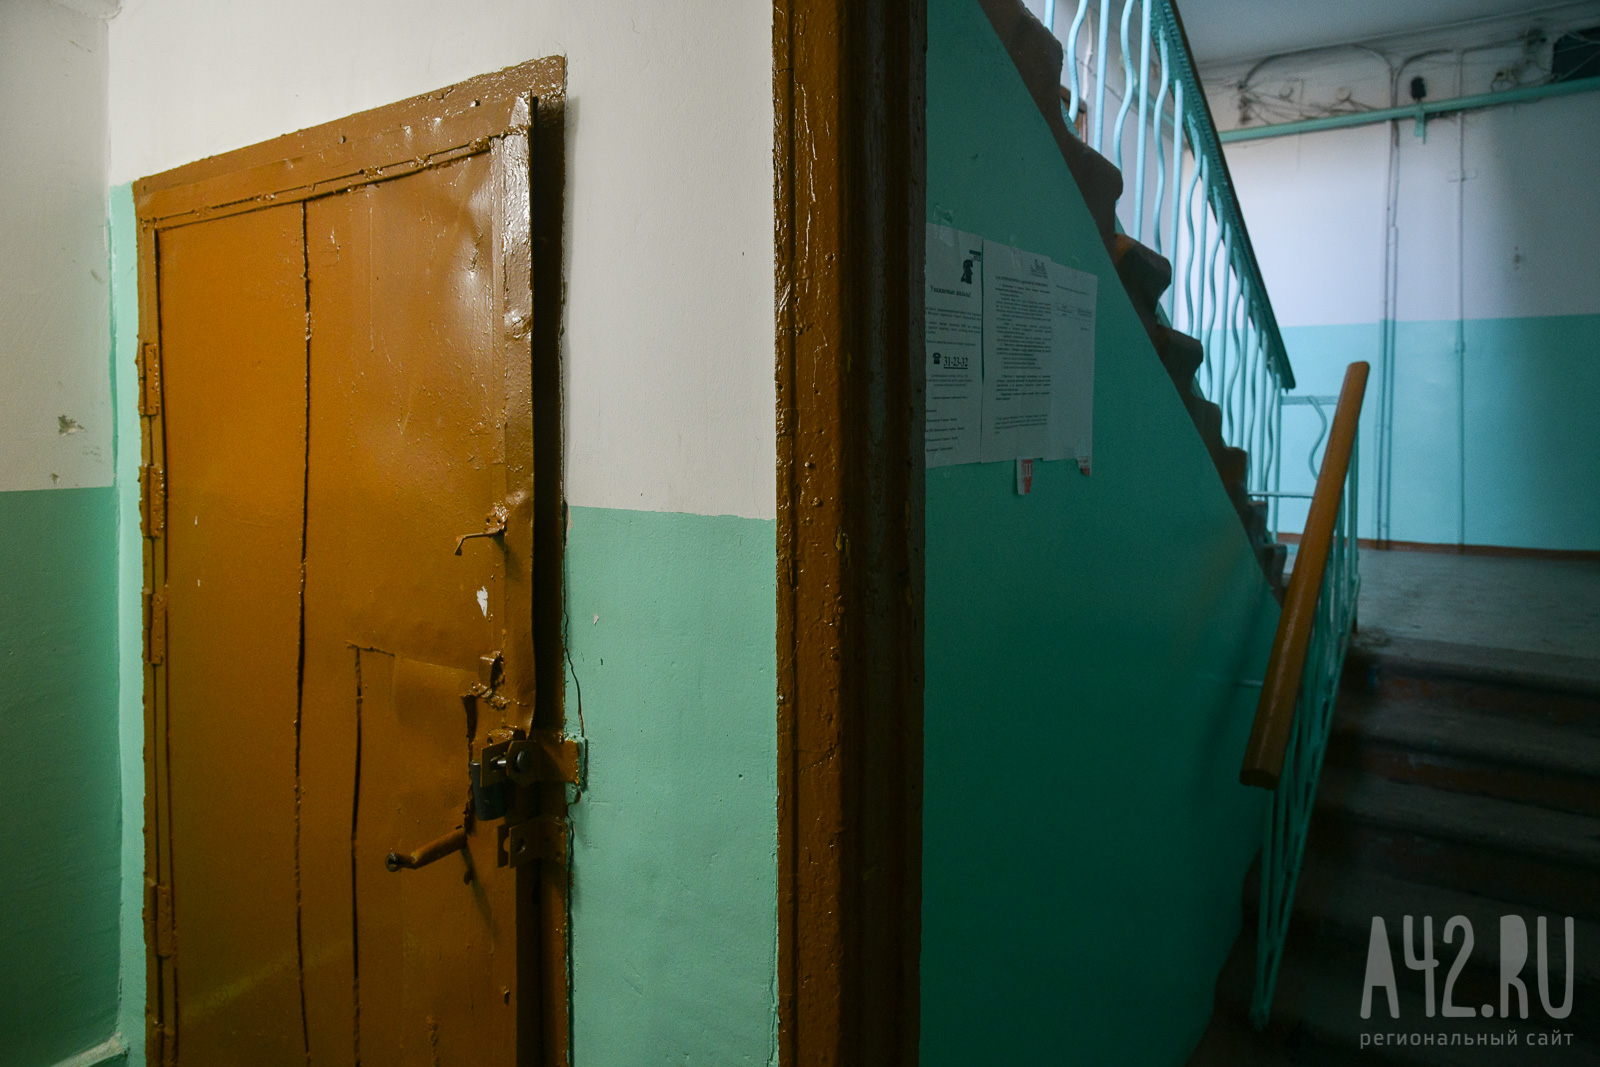 «Выйти невозможно»: кузбассовцы пожаловались на разрушенный подъезд с трещинами и сломанным домофоном